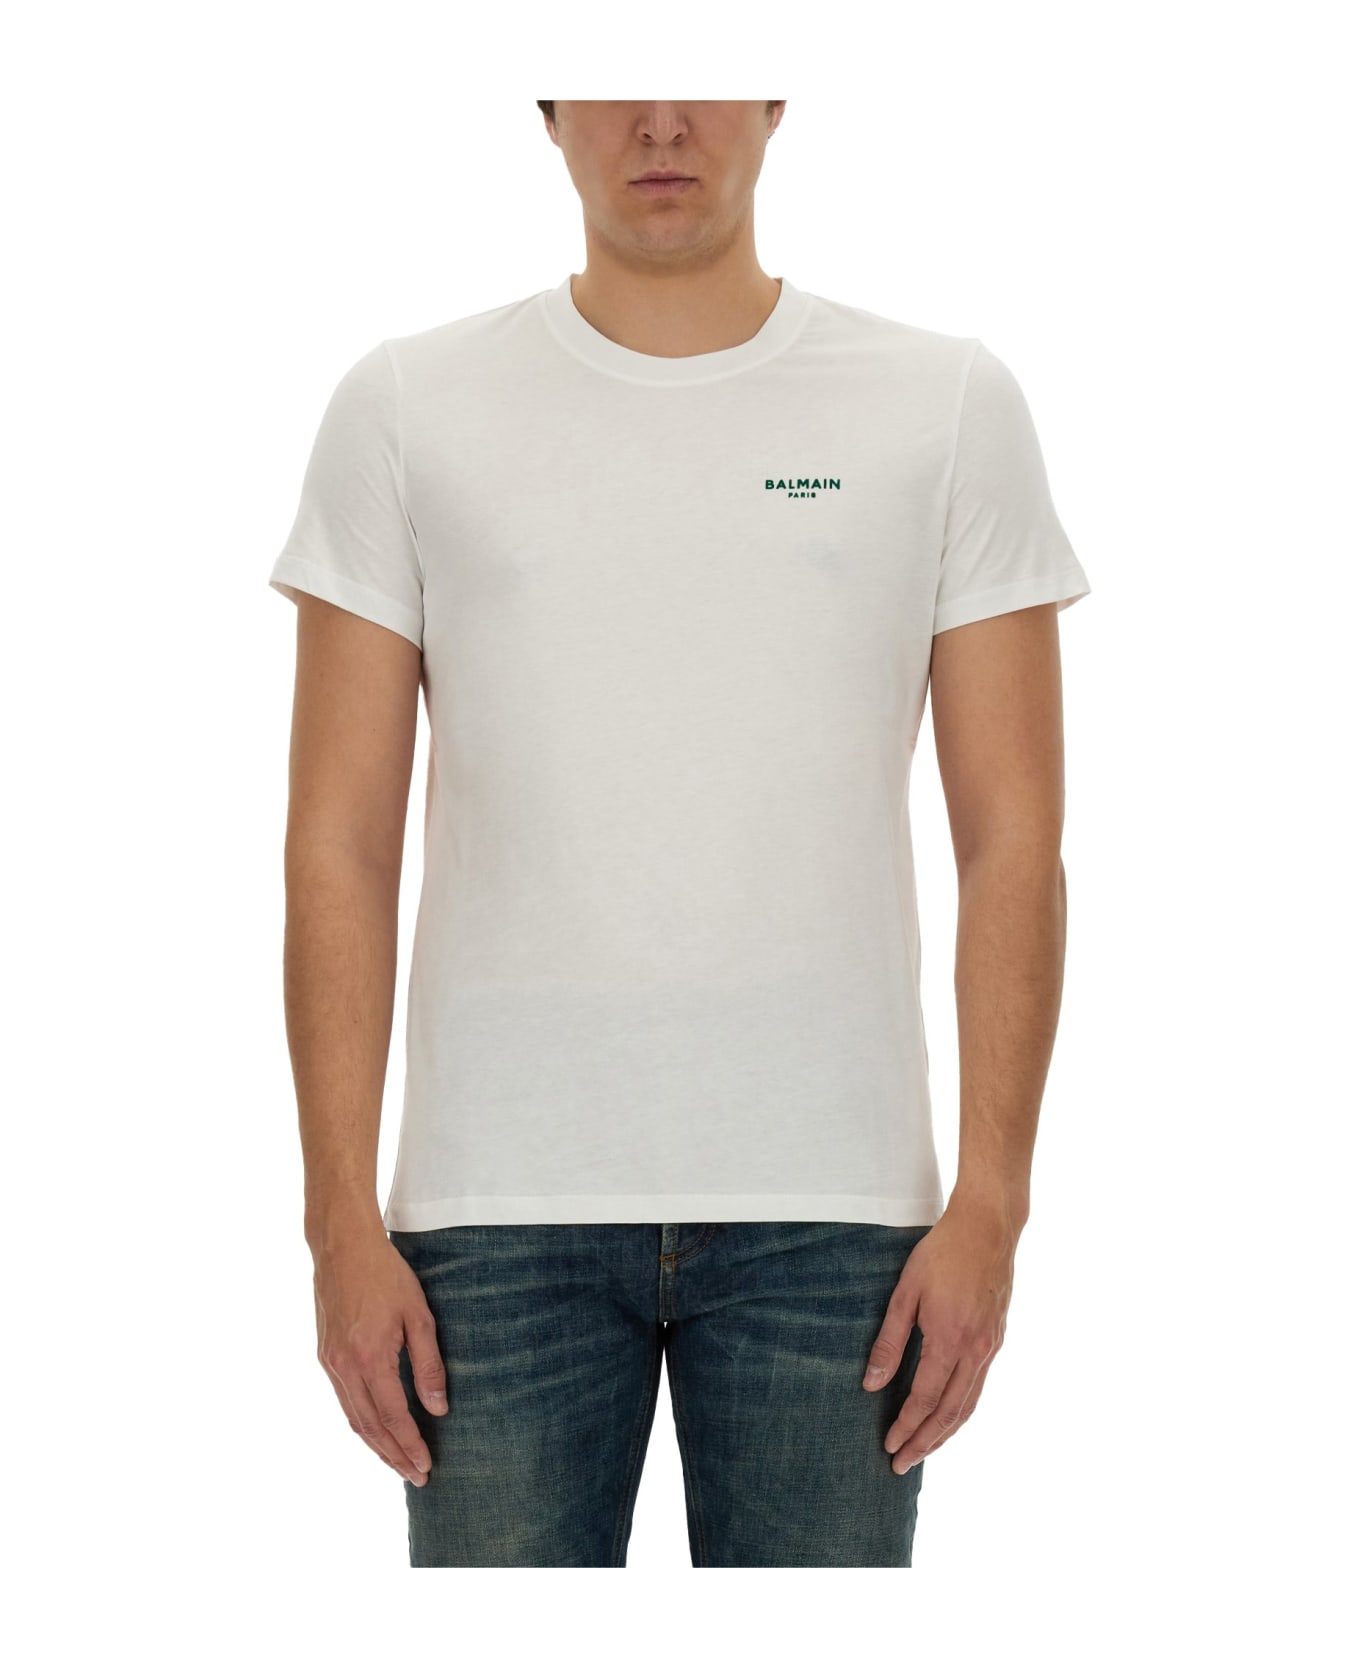 Balmain T-shirt With Logo - BIANCO